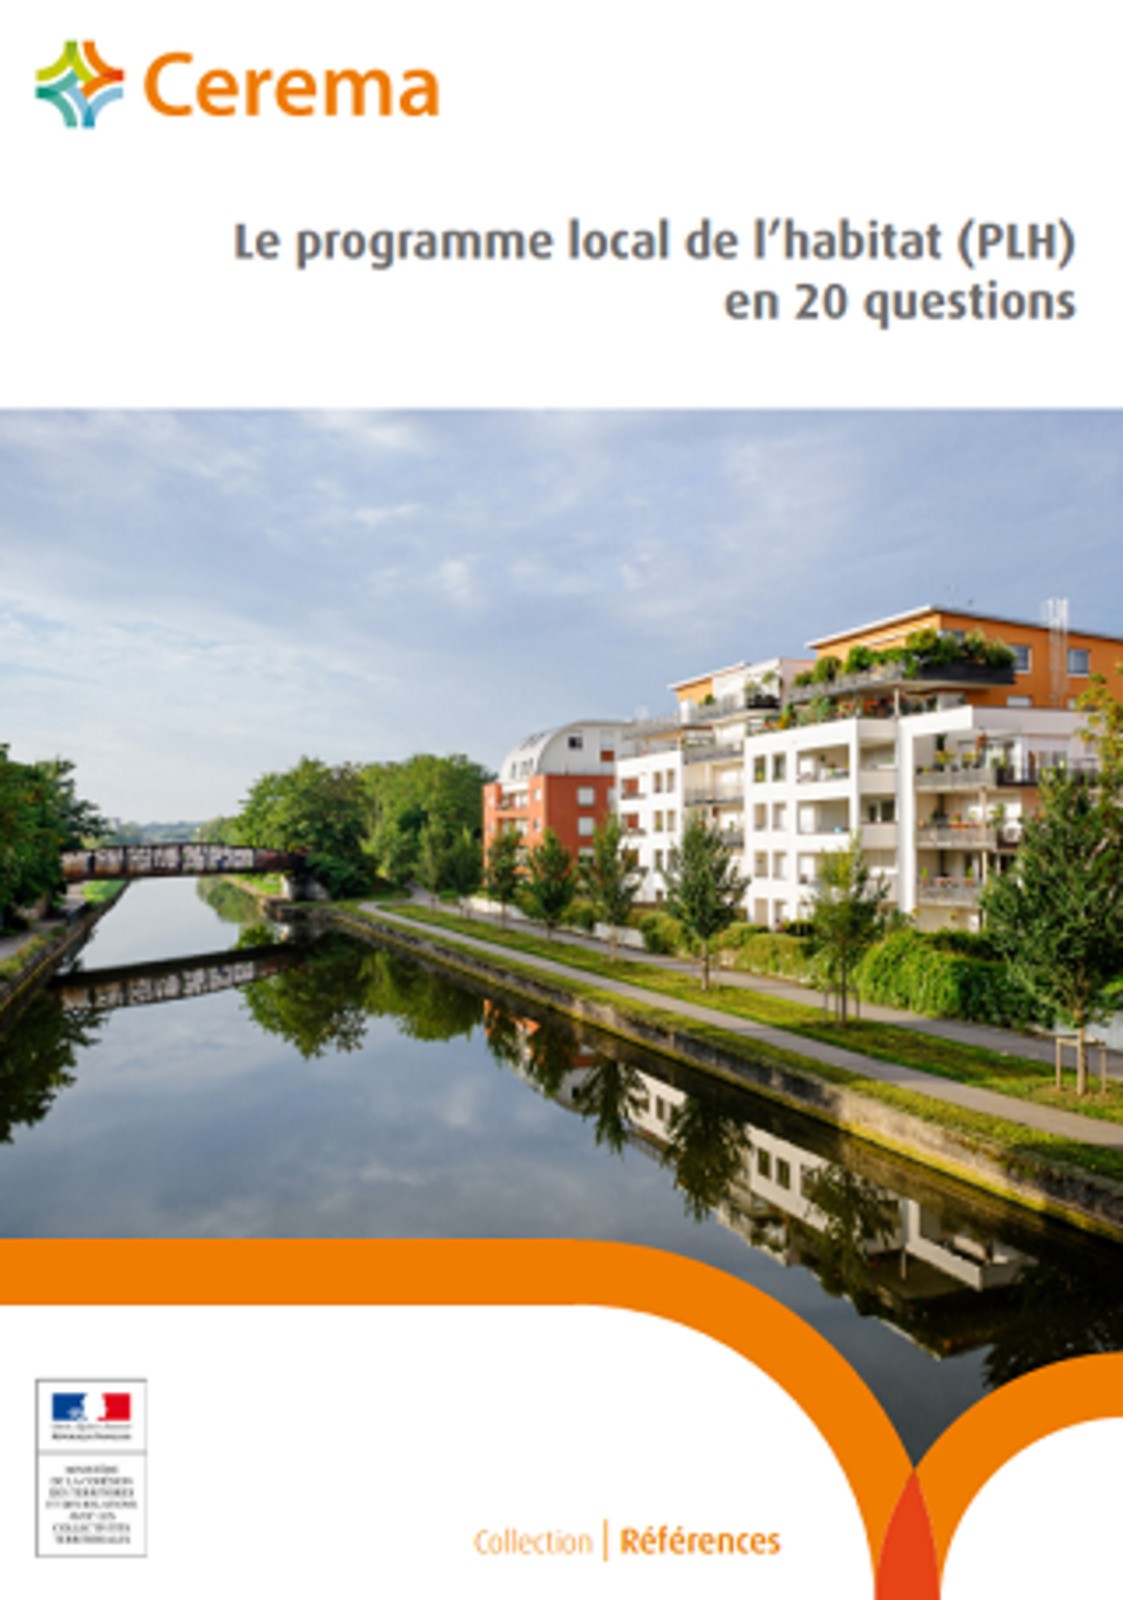 Le programme local de l'habitat (PLH) en 20 questions : des fiches pour les acteurs locaux